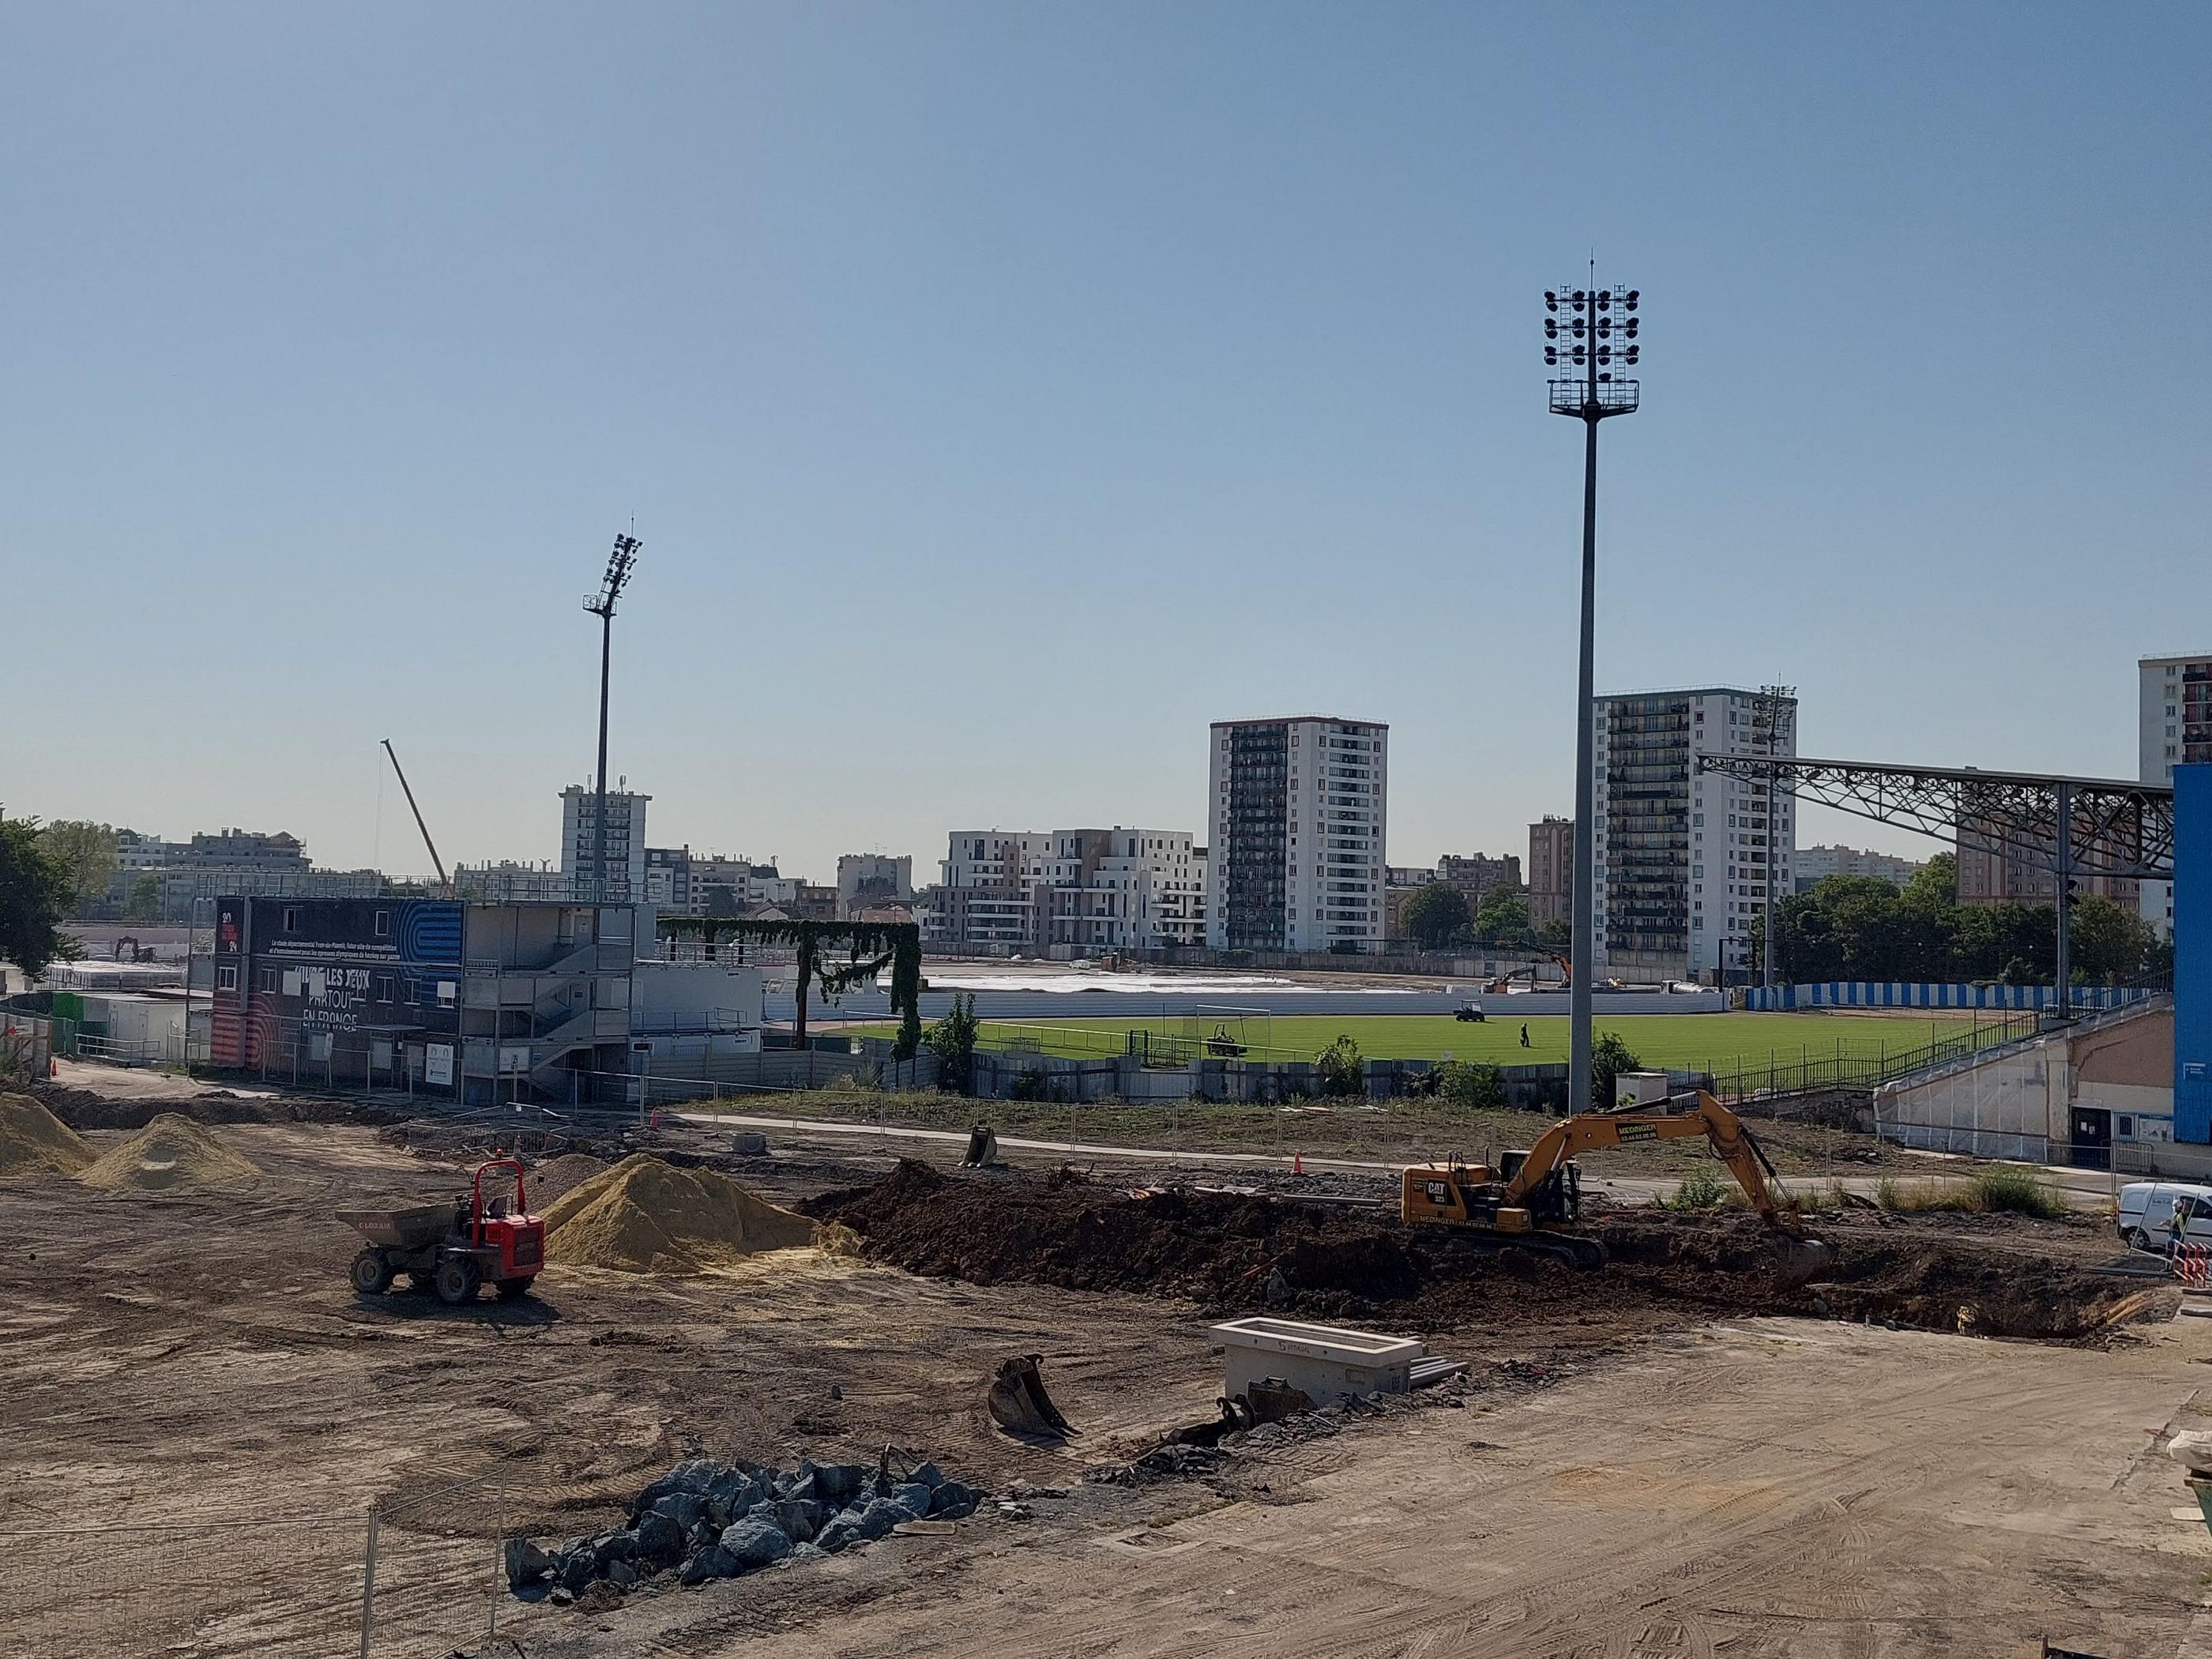 Colombes, le 19 juillet. Le chantier du stade Yves du Manoir en pleine transformation avant les JO de Paris 2024. LP/Olivier Bureau